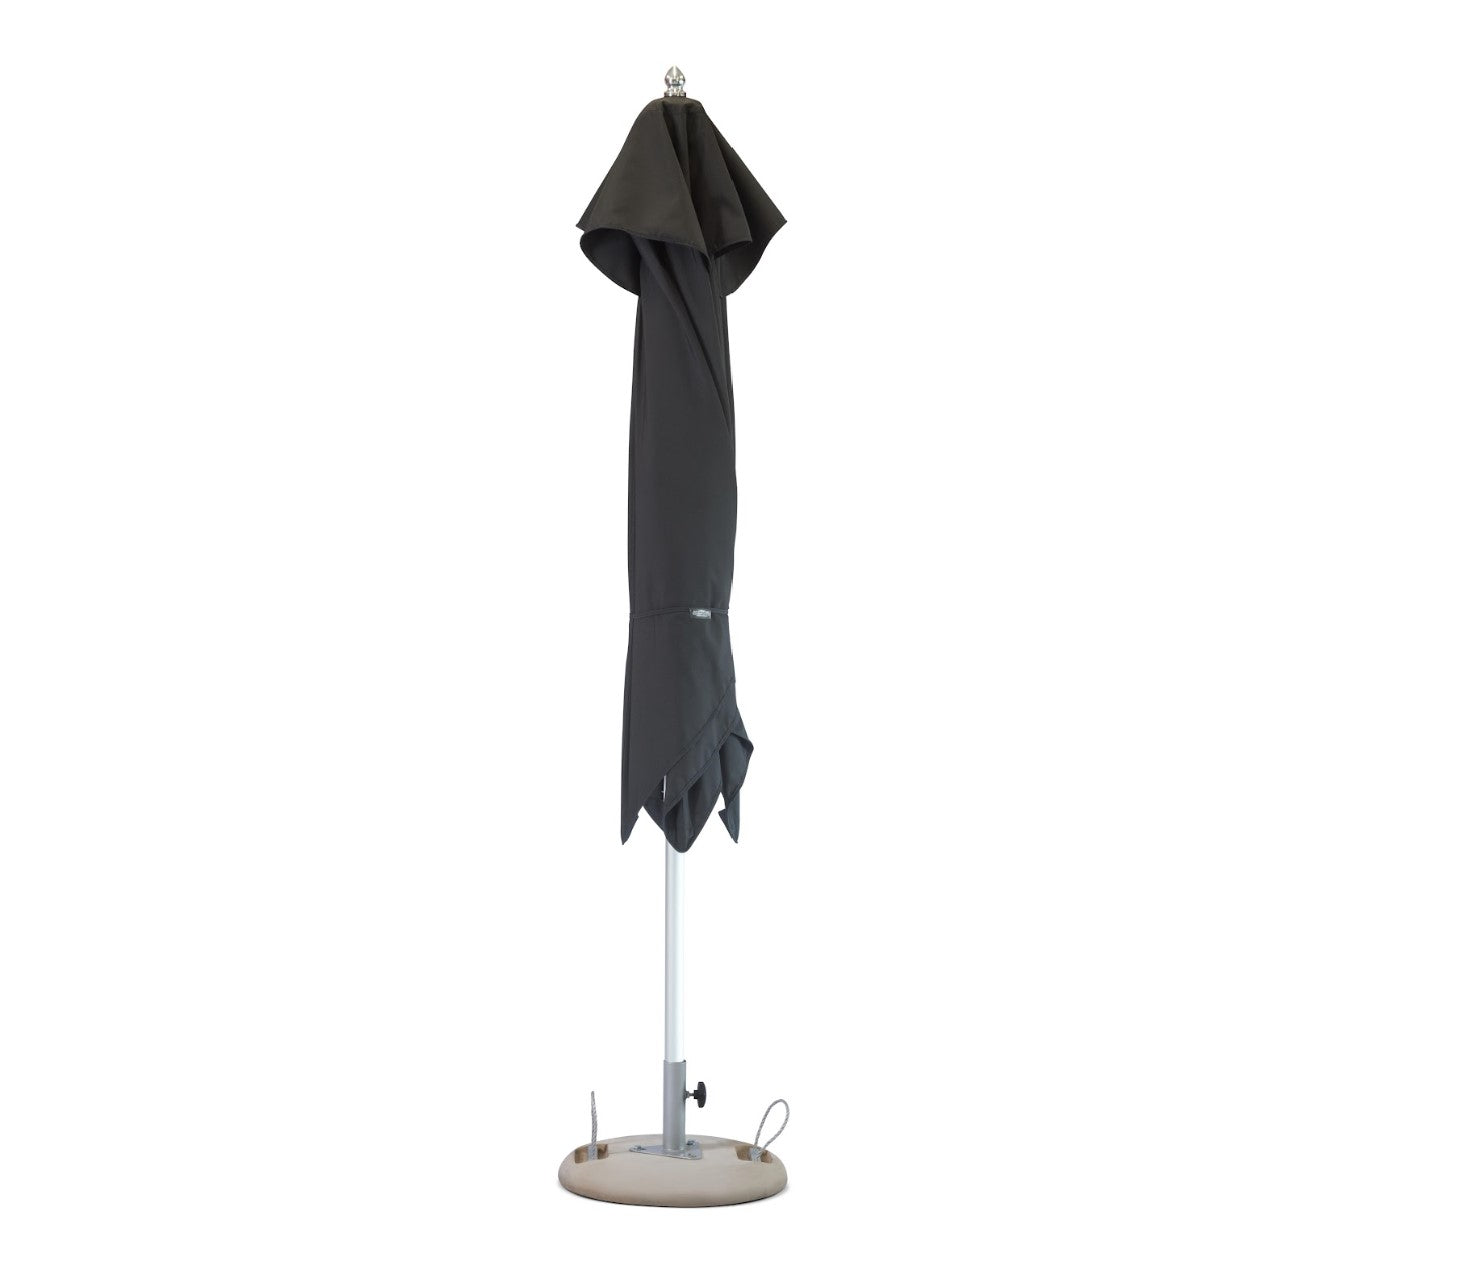 8' Black Polyester Square Market Patio Umbrella